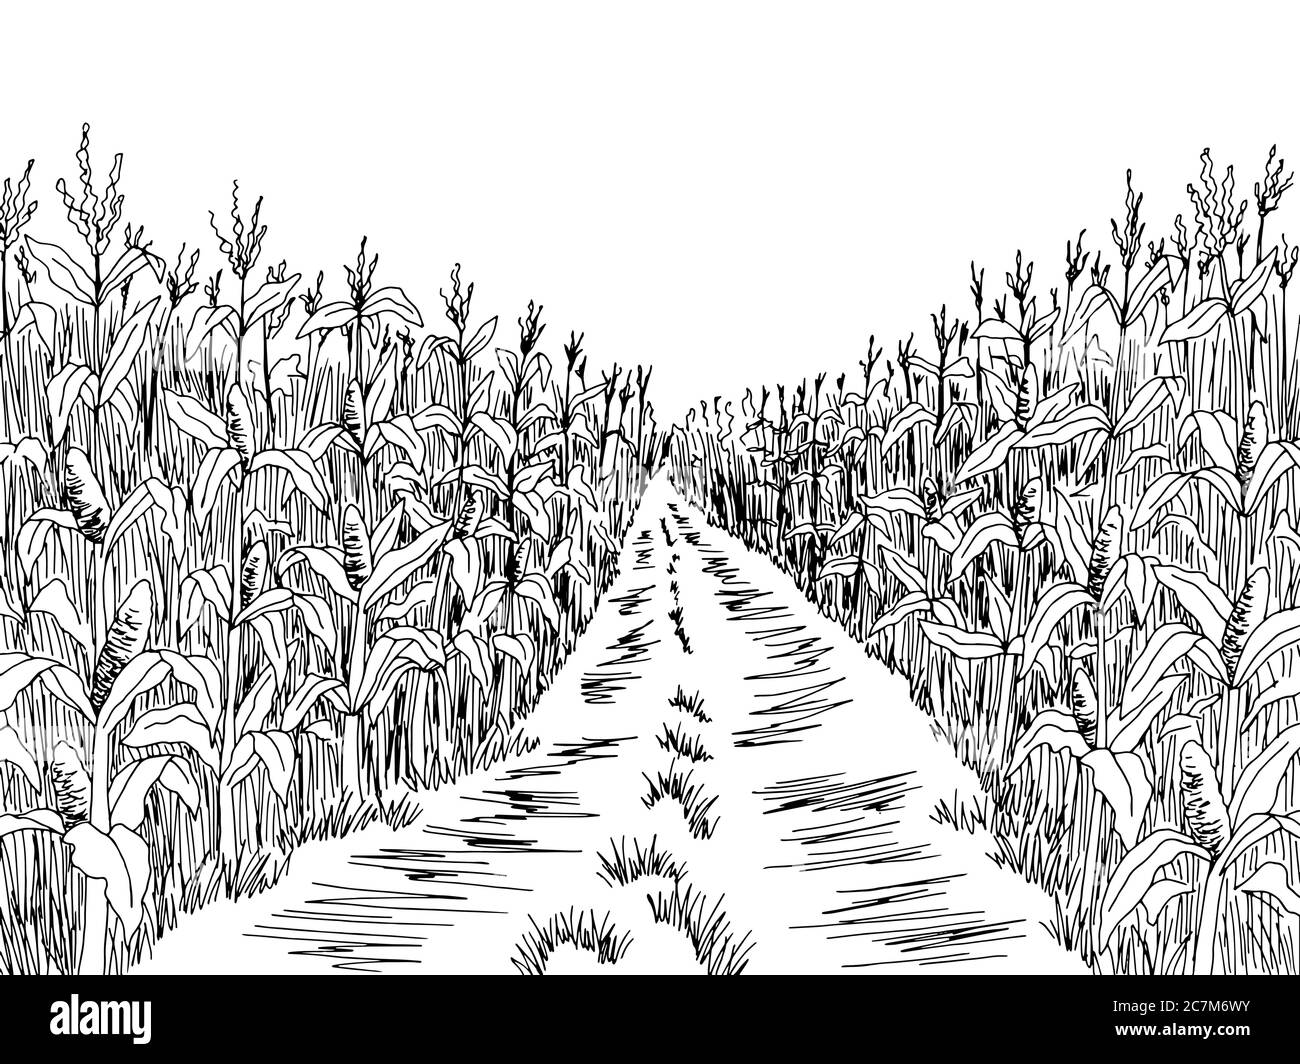 Cornfield road graphic black white landscape sketch illustration vector Stock Vector